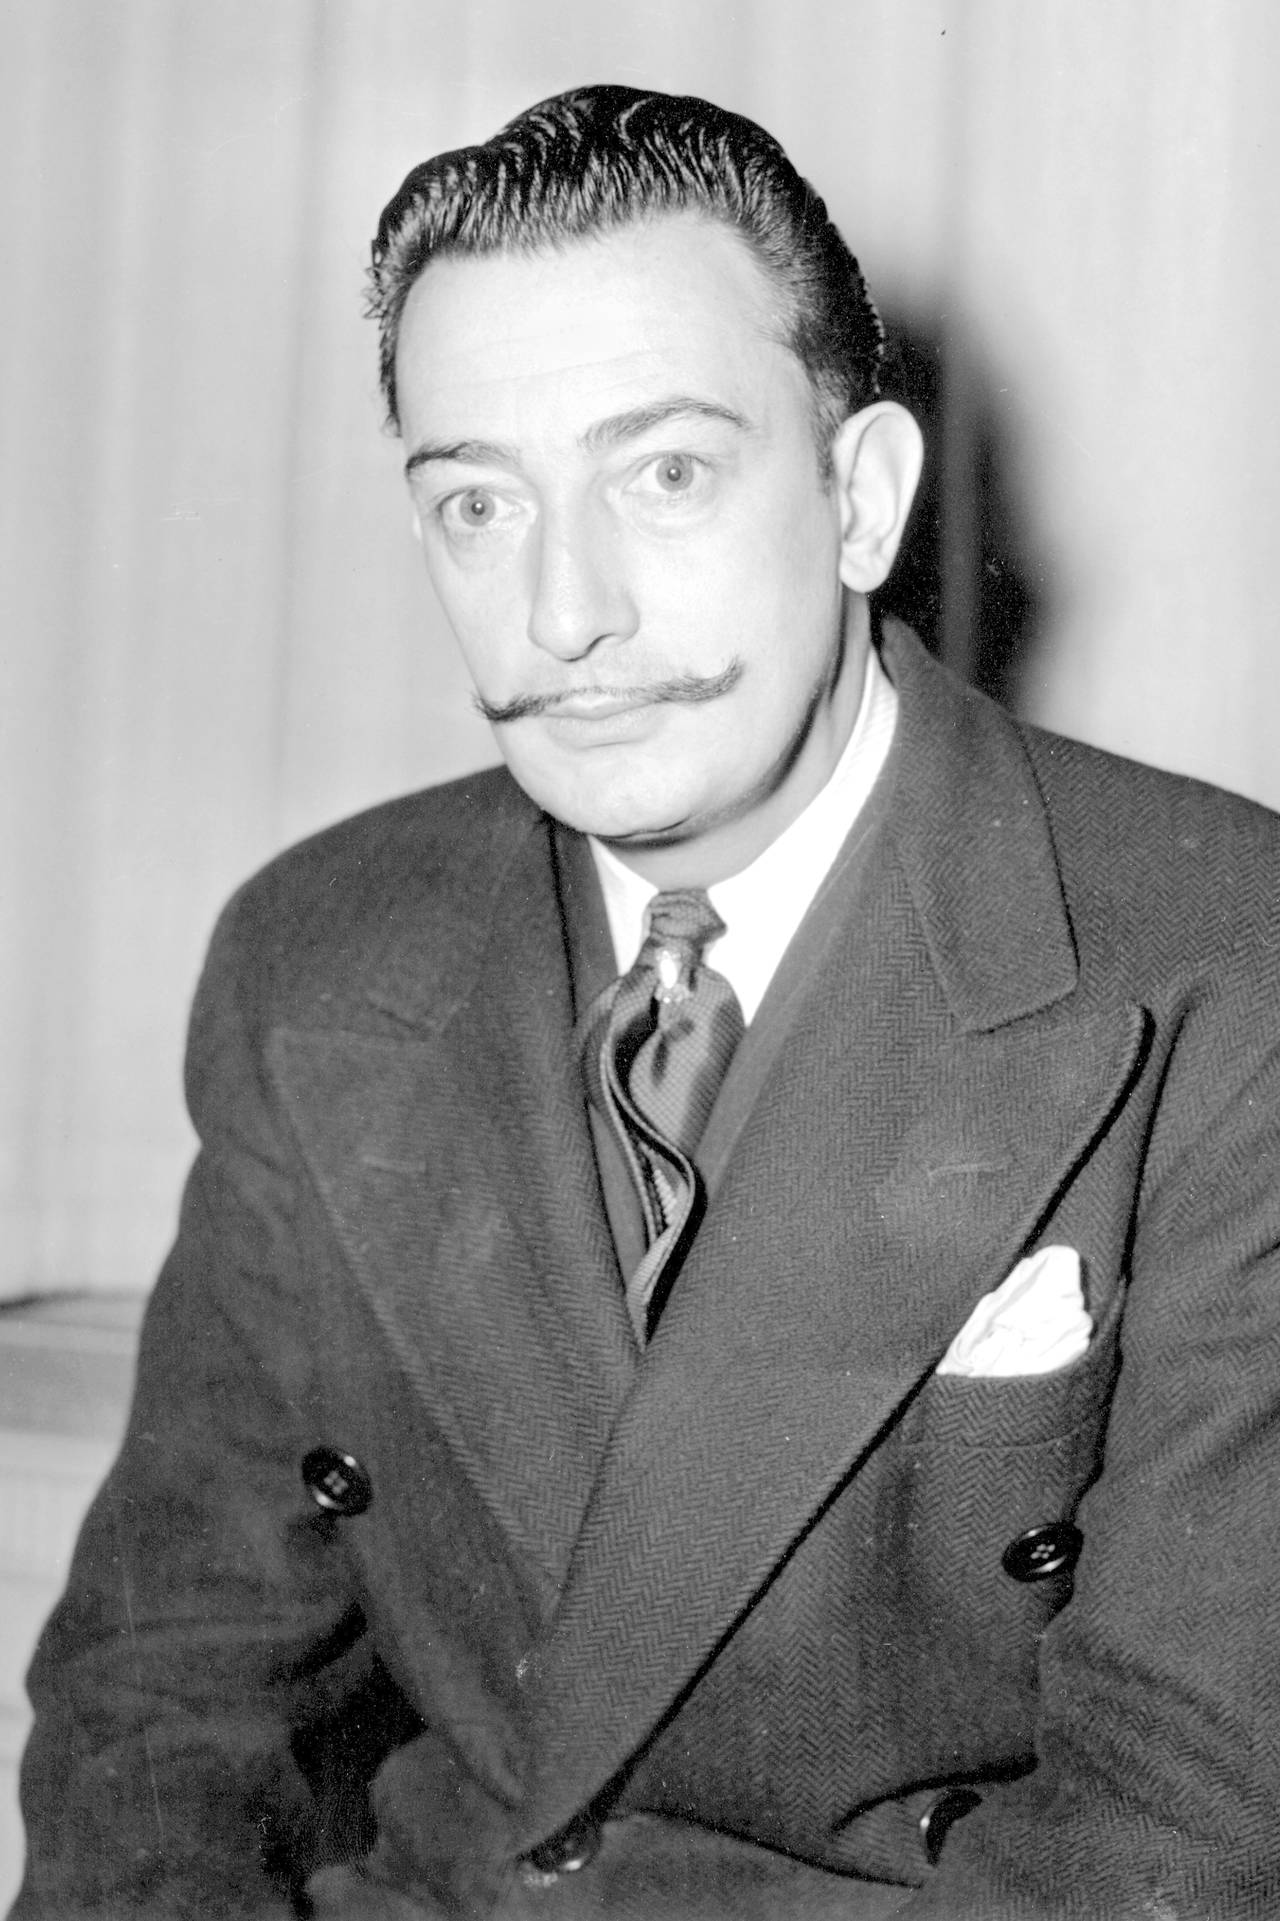 Inconforme. El director de la Fundación Gala Salvador Dalí, Juan M. Sevillano, se pronunció en contra. (Imagen de Dalí joven).